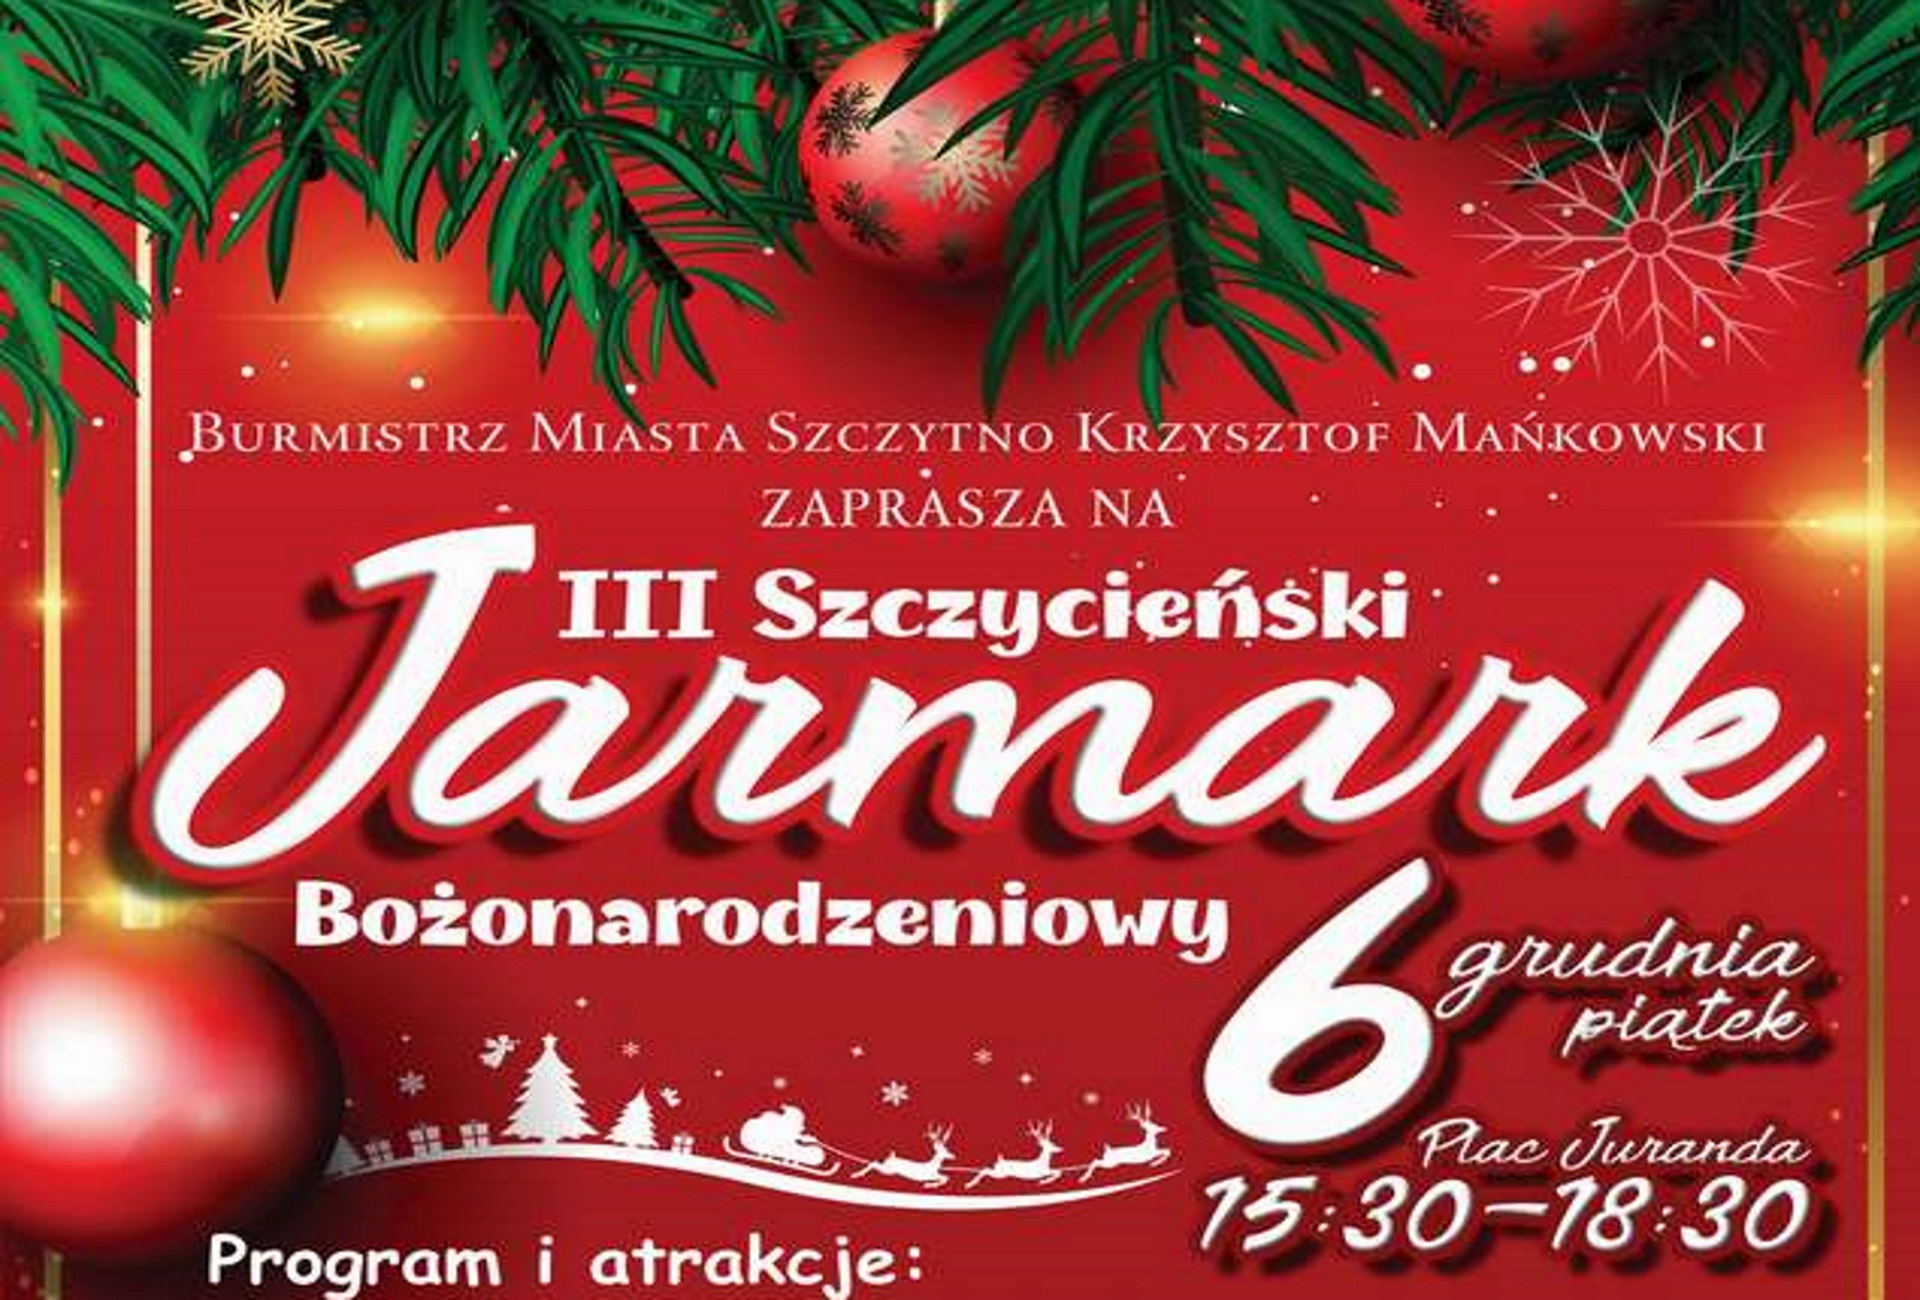 Plakat - informujący o imprezie III Szczycieńskim Jarmarku Bożonarodzeniowym. Plakat tło czerwone z elementami grafiki w górnej części plakatu choinki i bąbek.     